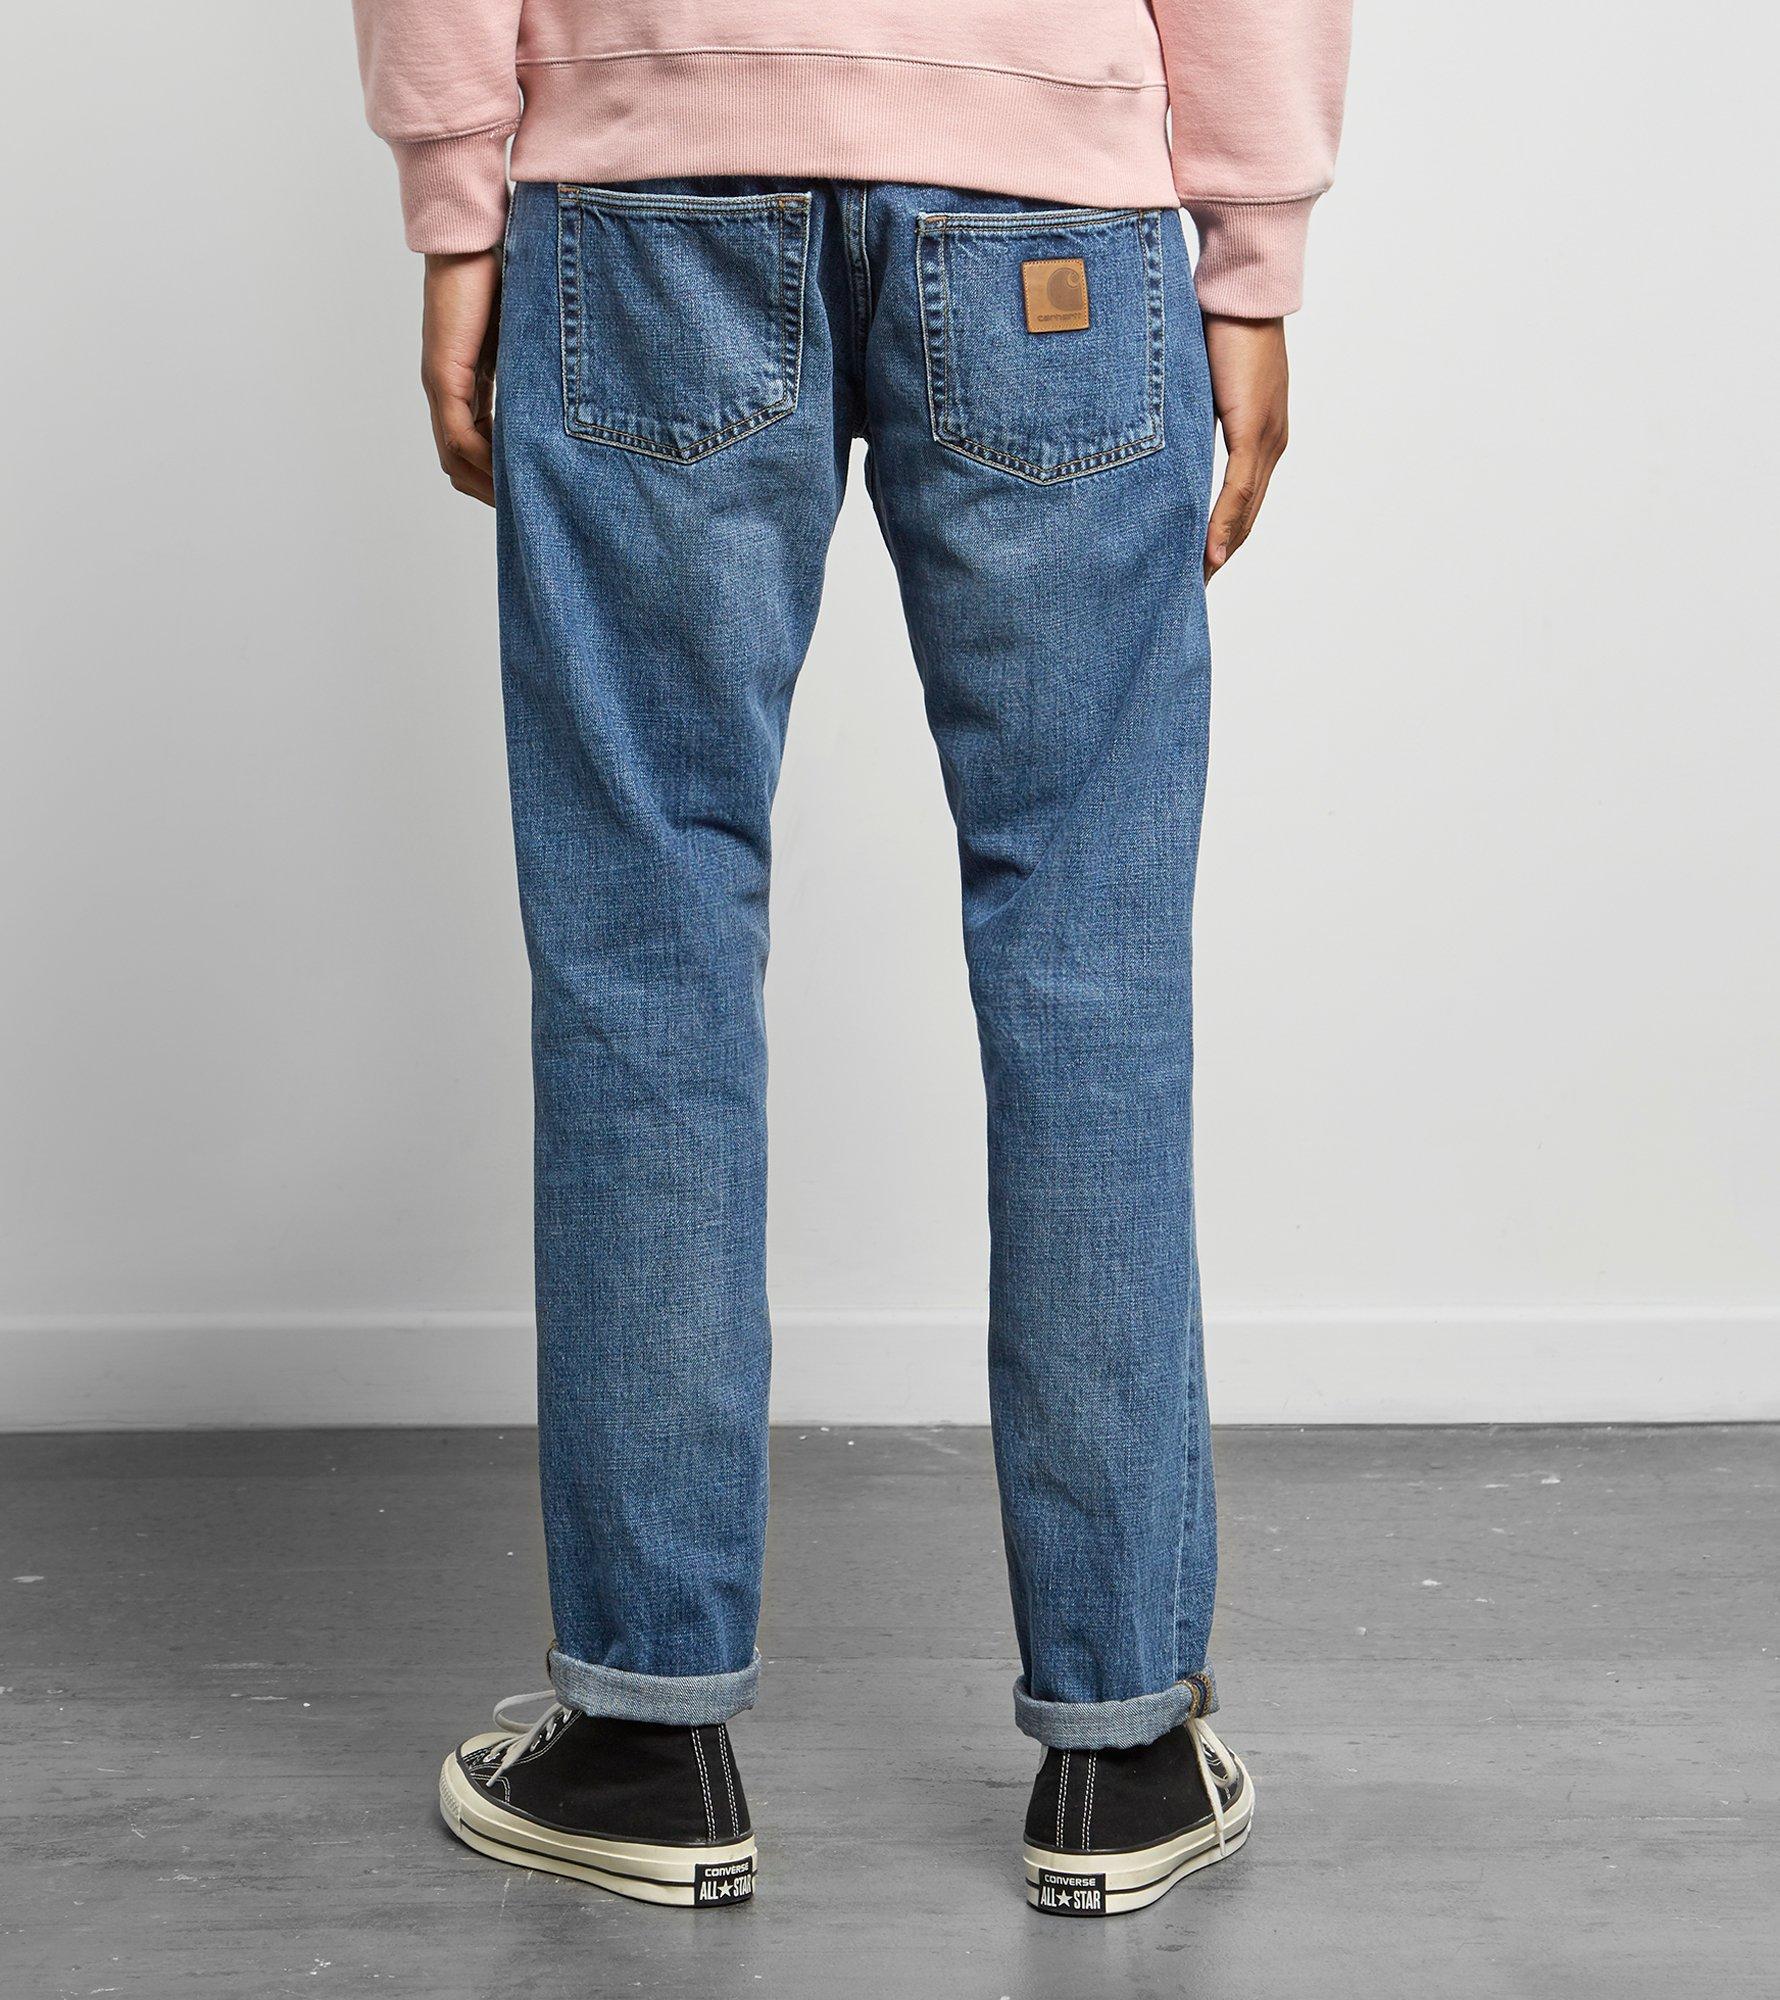 Carhartt WIP Denim Klondike Jeans in Blue for Men - Lyst